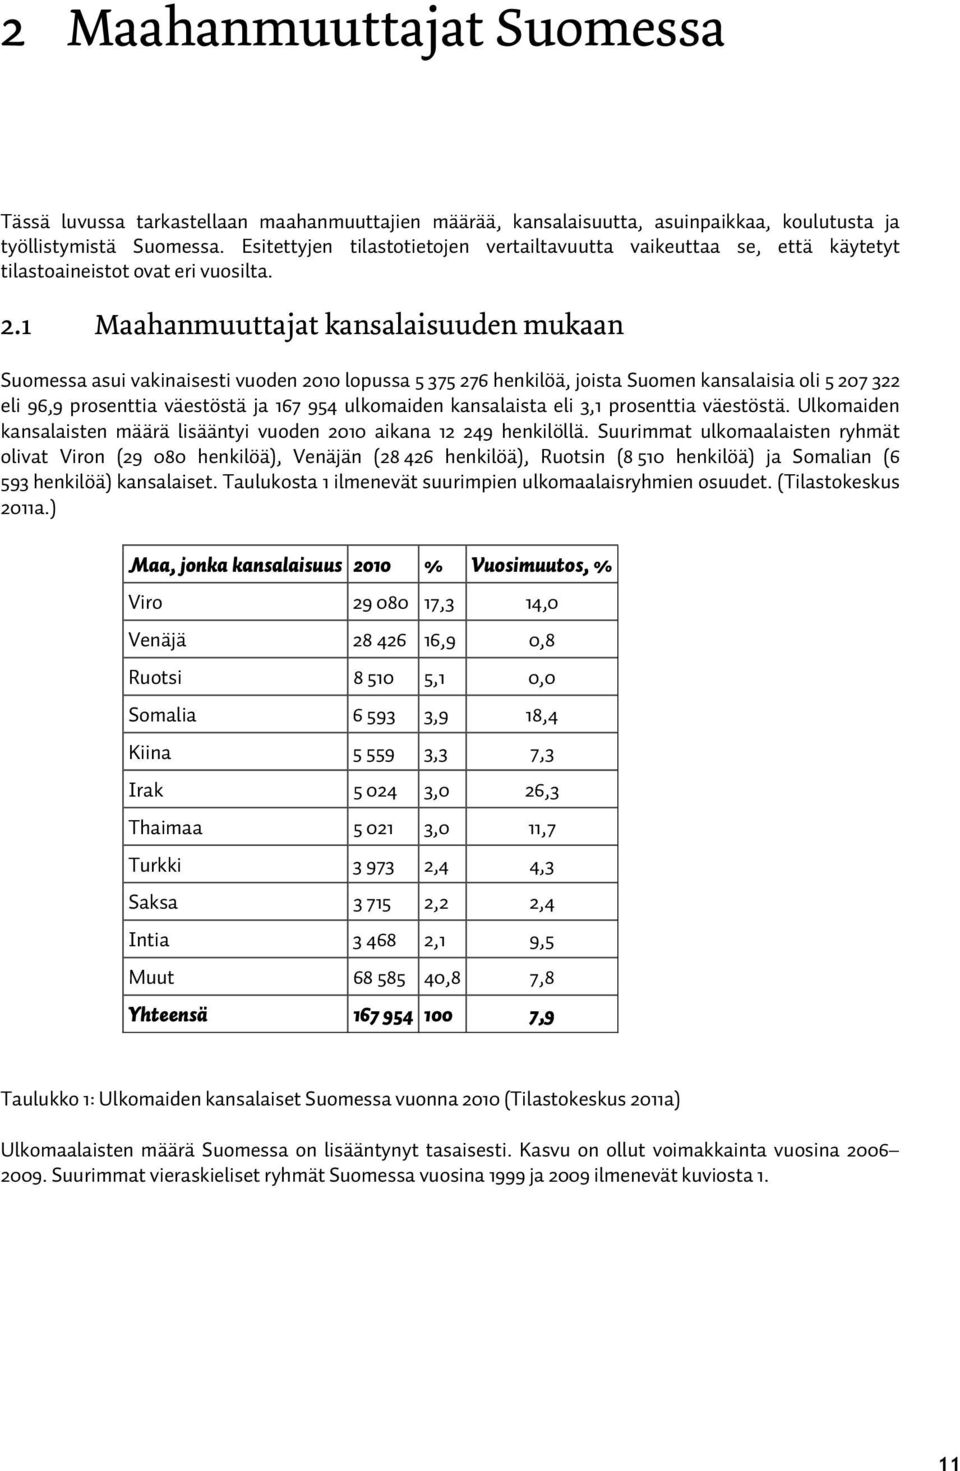 1 Maahanmuuttajat kansalaisuuden mukaan Suomessa asui vakinaisesti vuoden 2010 lopussa 5 375 276 henkilöä, joista Suomen kansalaisia oli 5 207 322 eli 96,9 prosenttia väestöstä ja 167 954 ulkomaiden